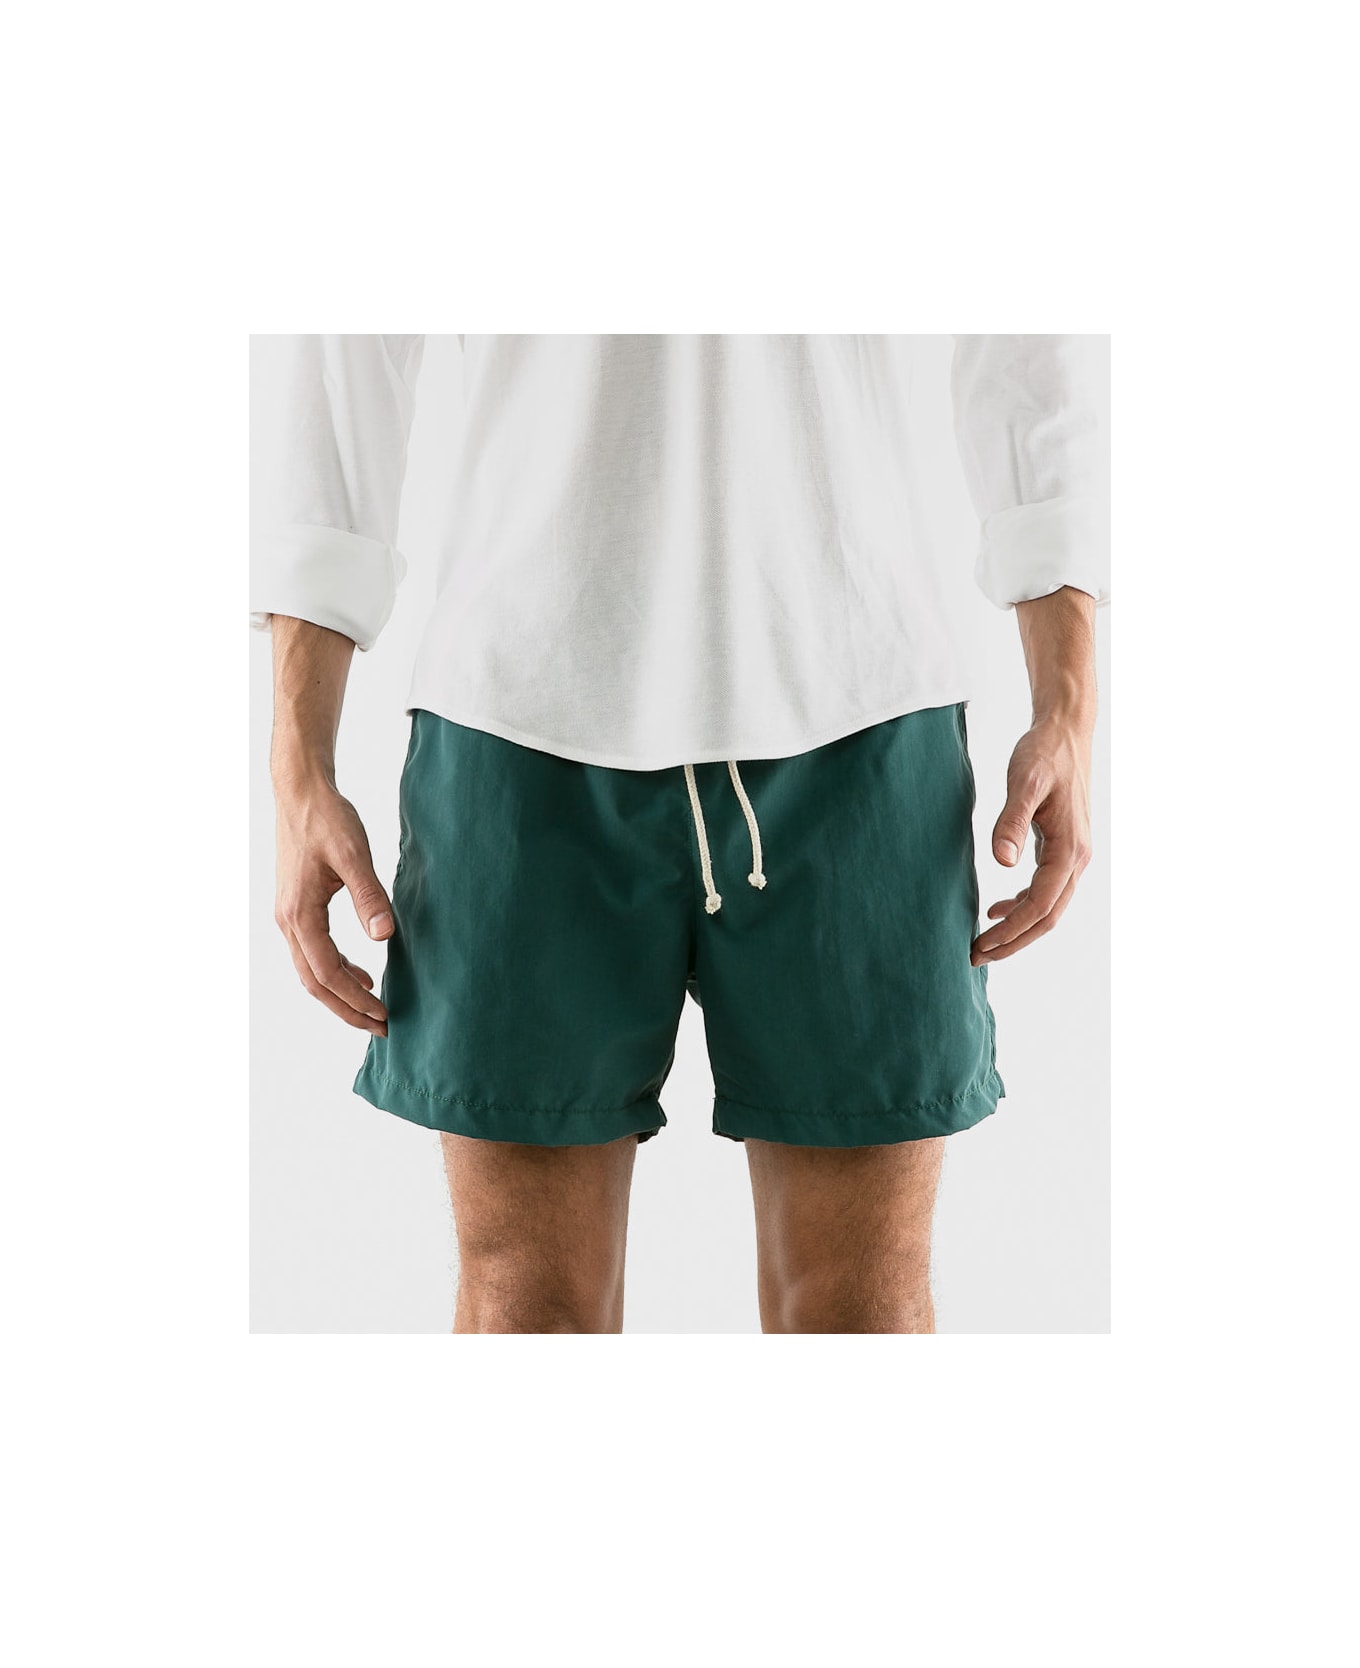 Ripa Ripa Verde Pino Swim Shorts - Green スイムトランクス